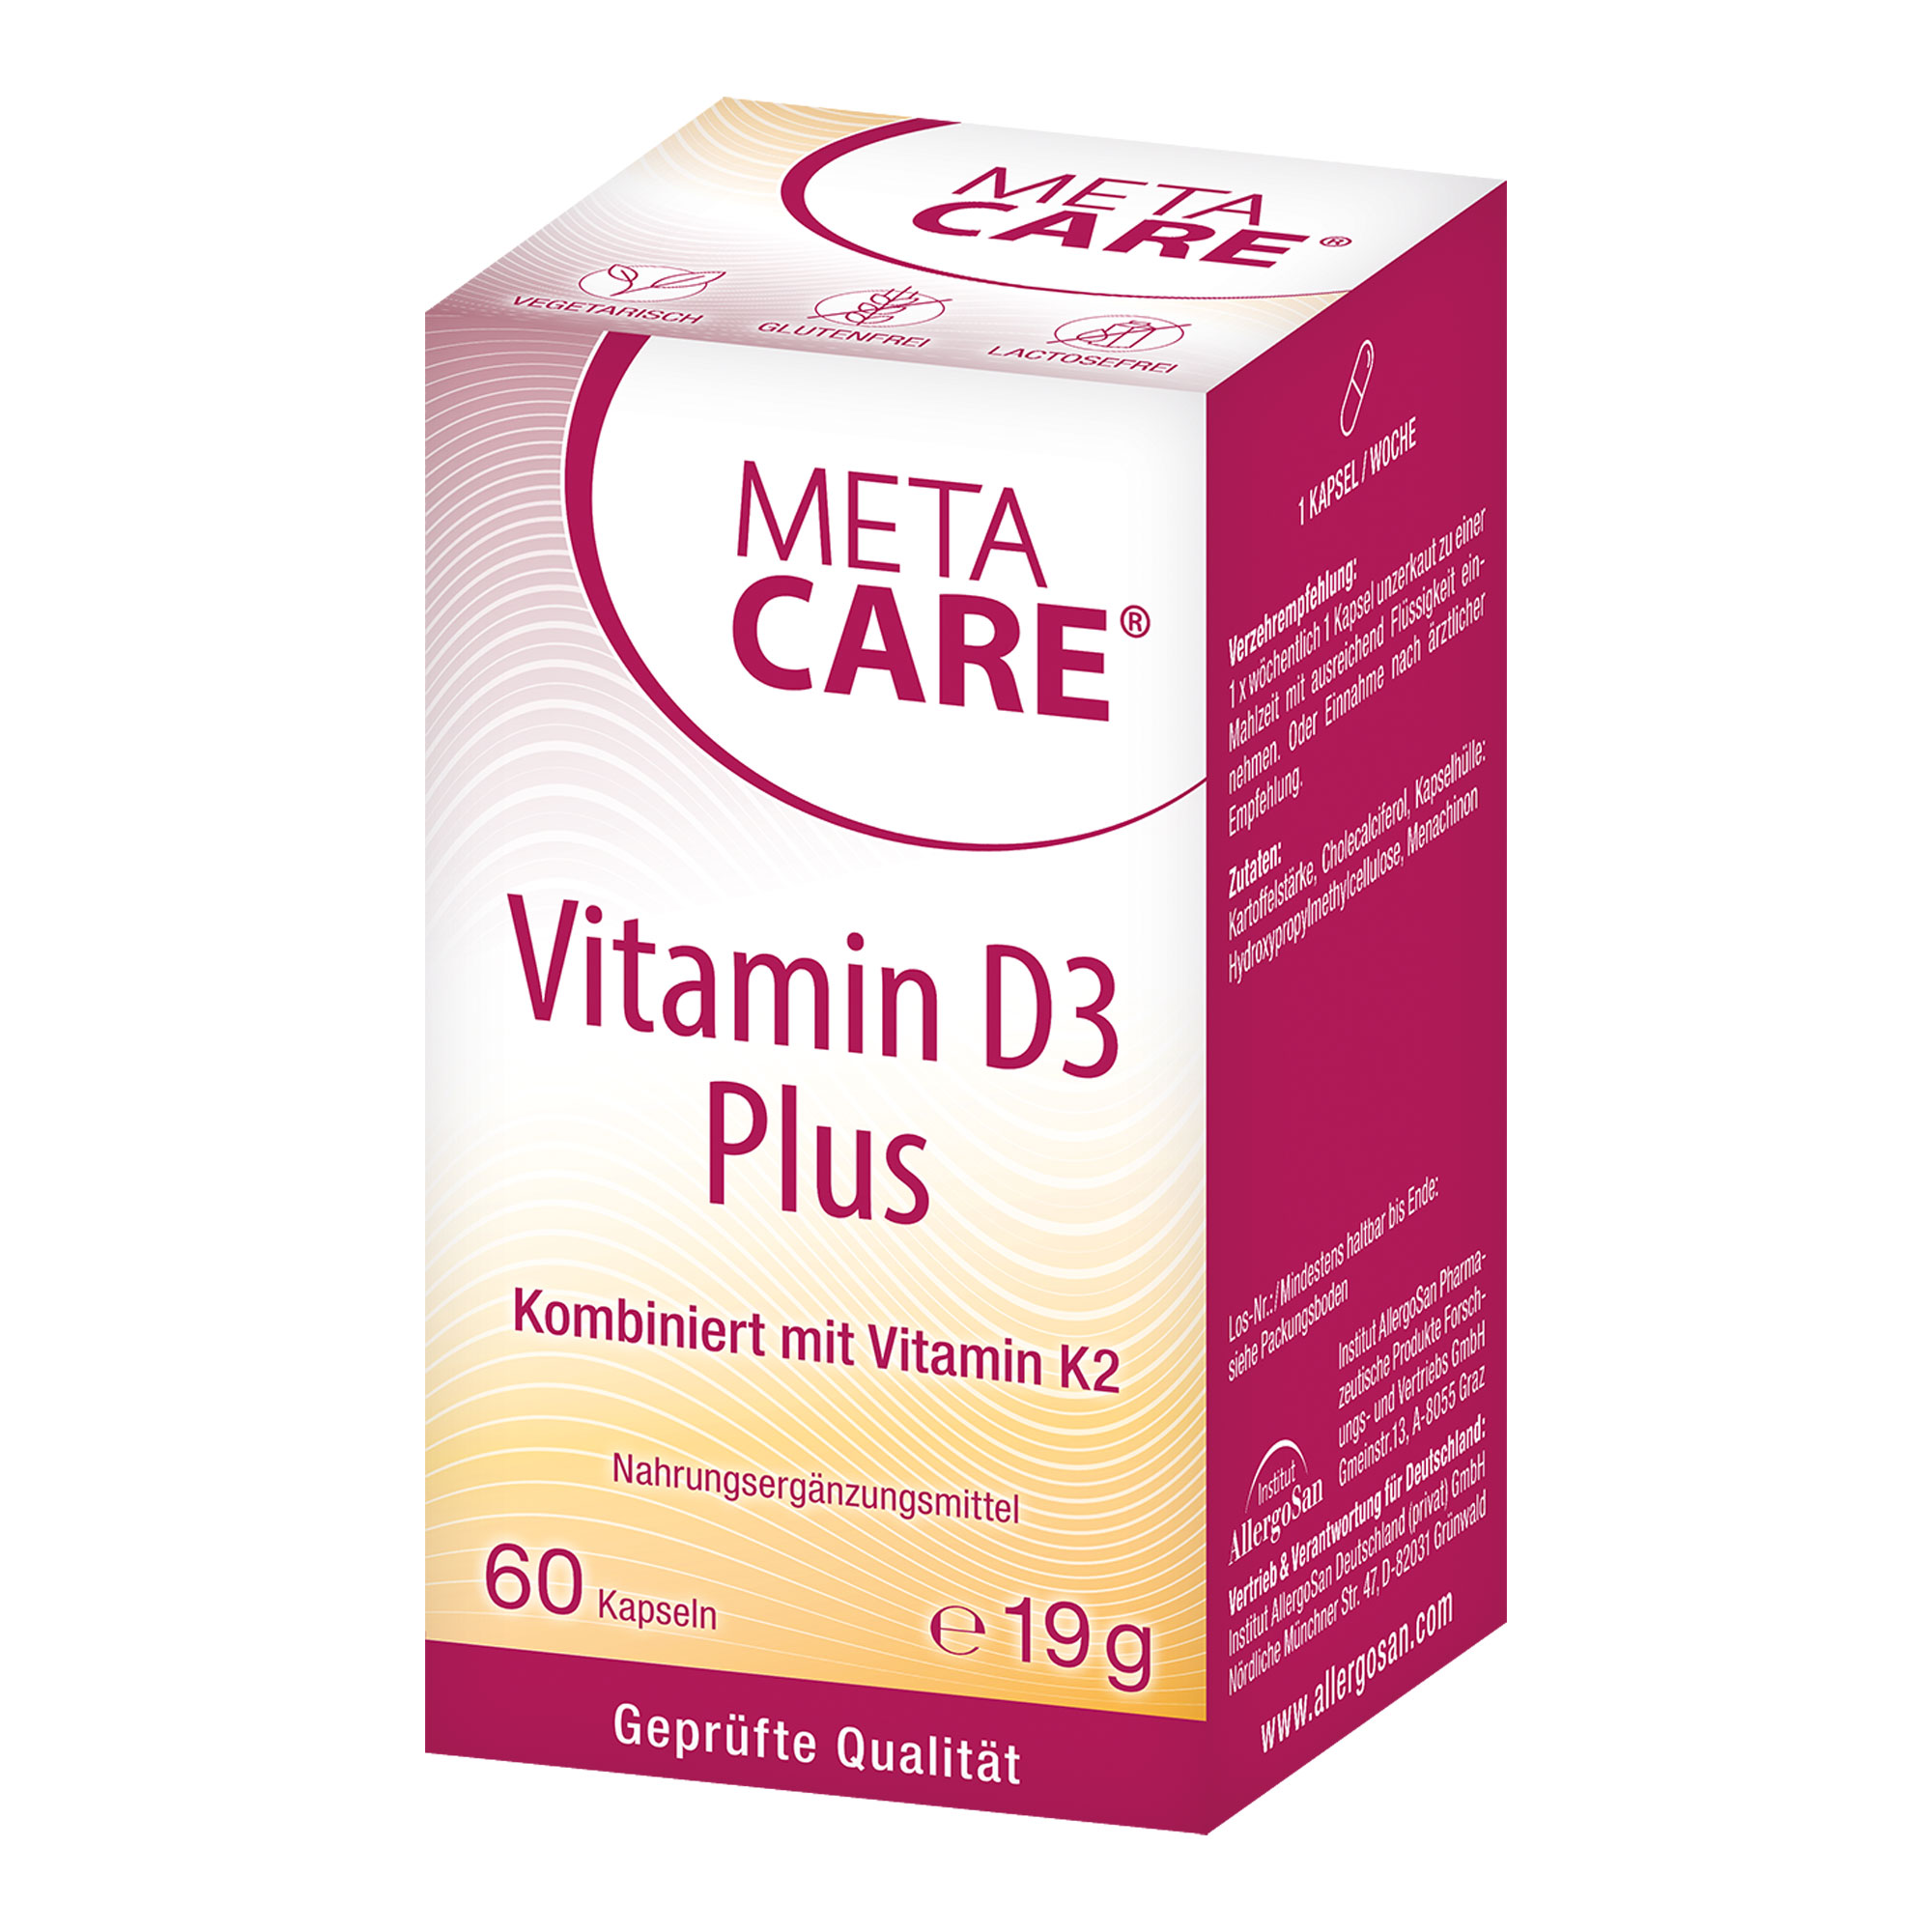 Nahrungsergänzungsmittel mit hochdosiertem Vitamin D3 und K2.